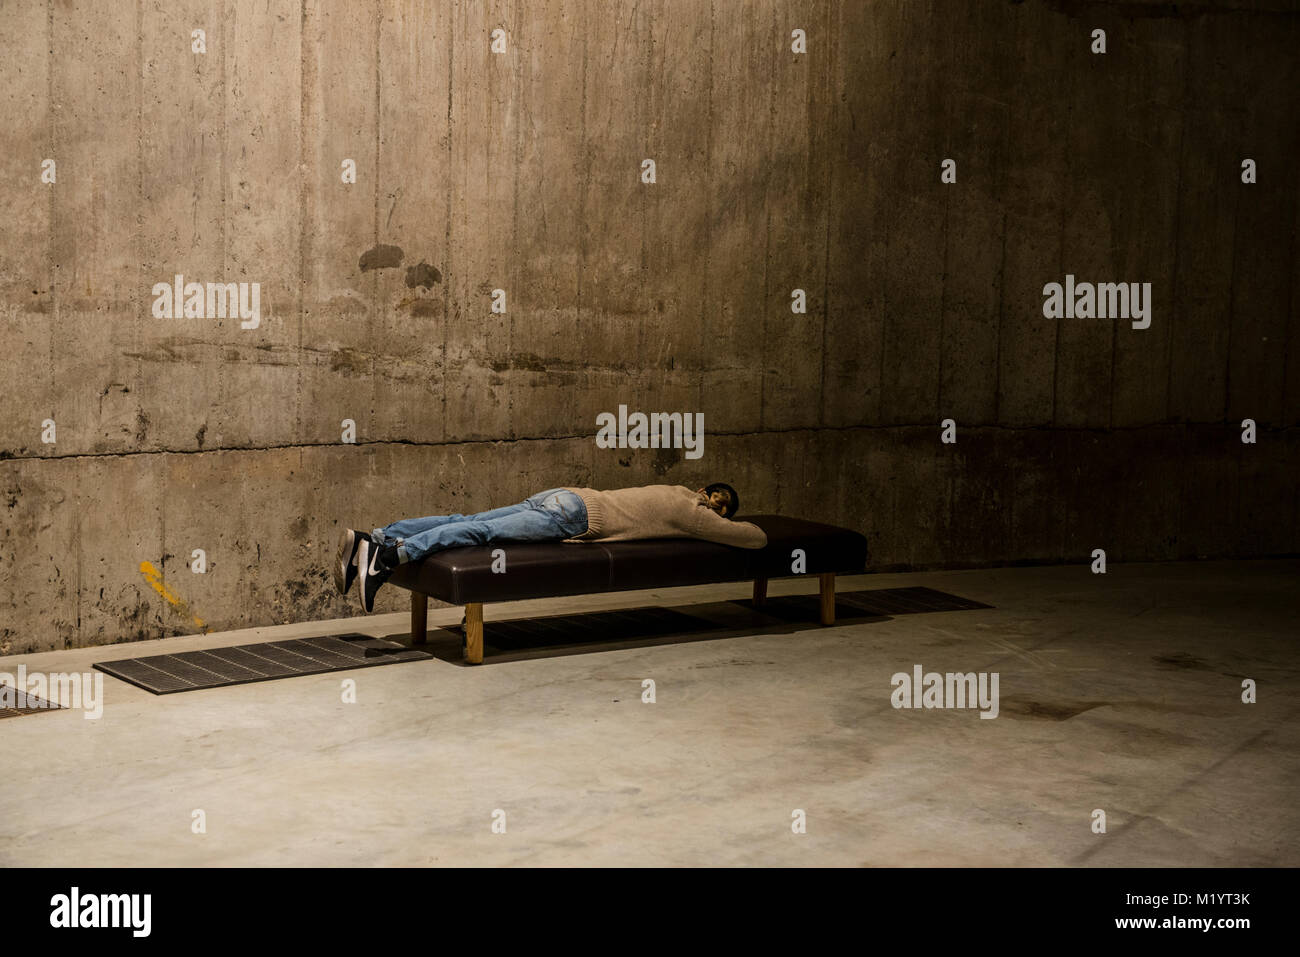 Homme couché sur un banc en béton, Tate Modern, Londres, Angleterre Banque D'Images